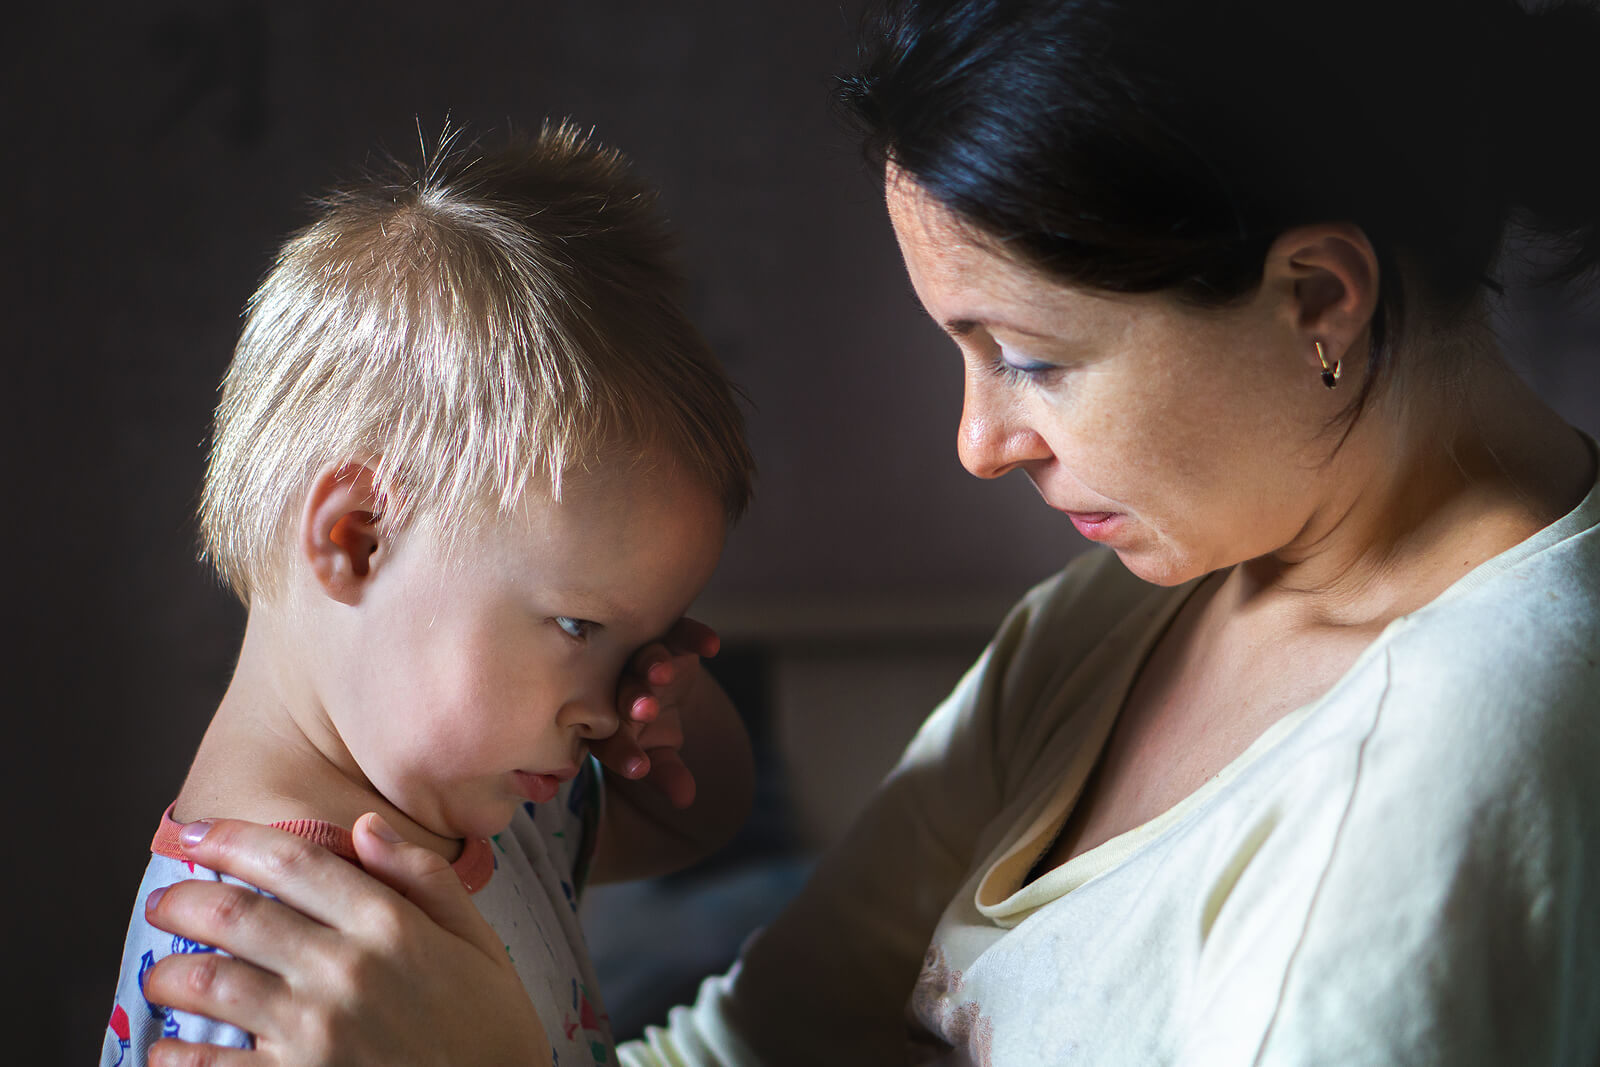 Madre hablando con su hijo para enseñarle a no ocultar las emociones negativas.